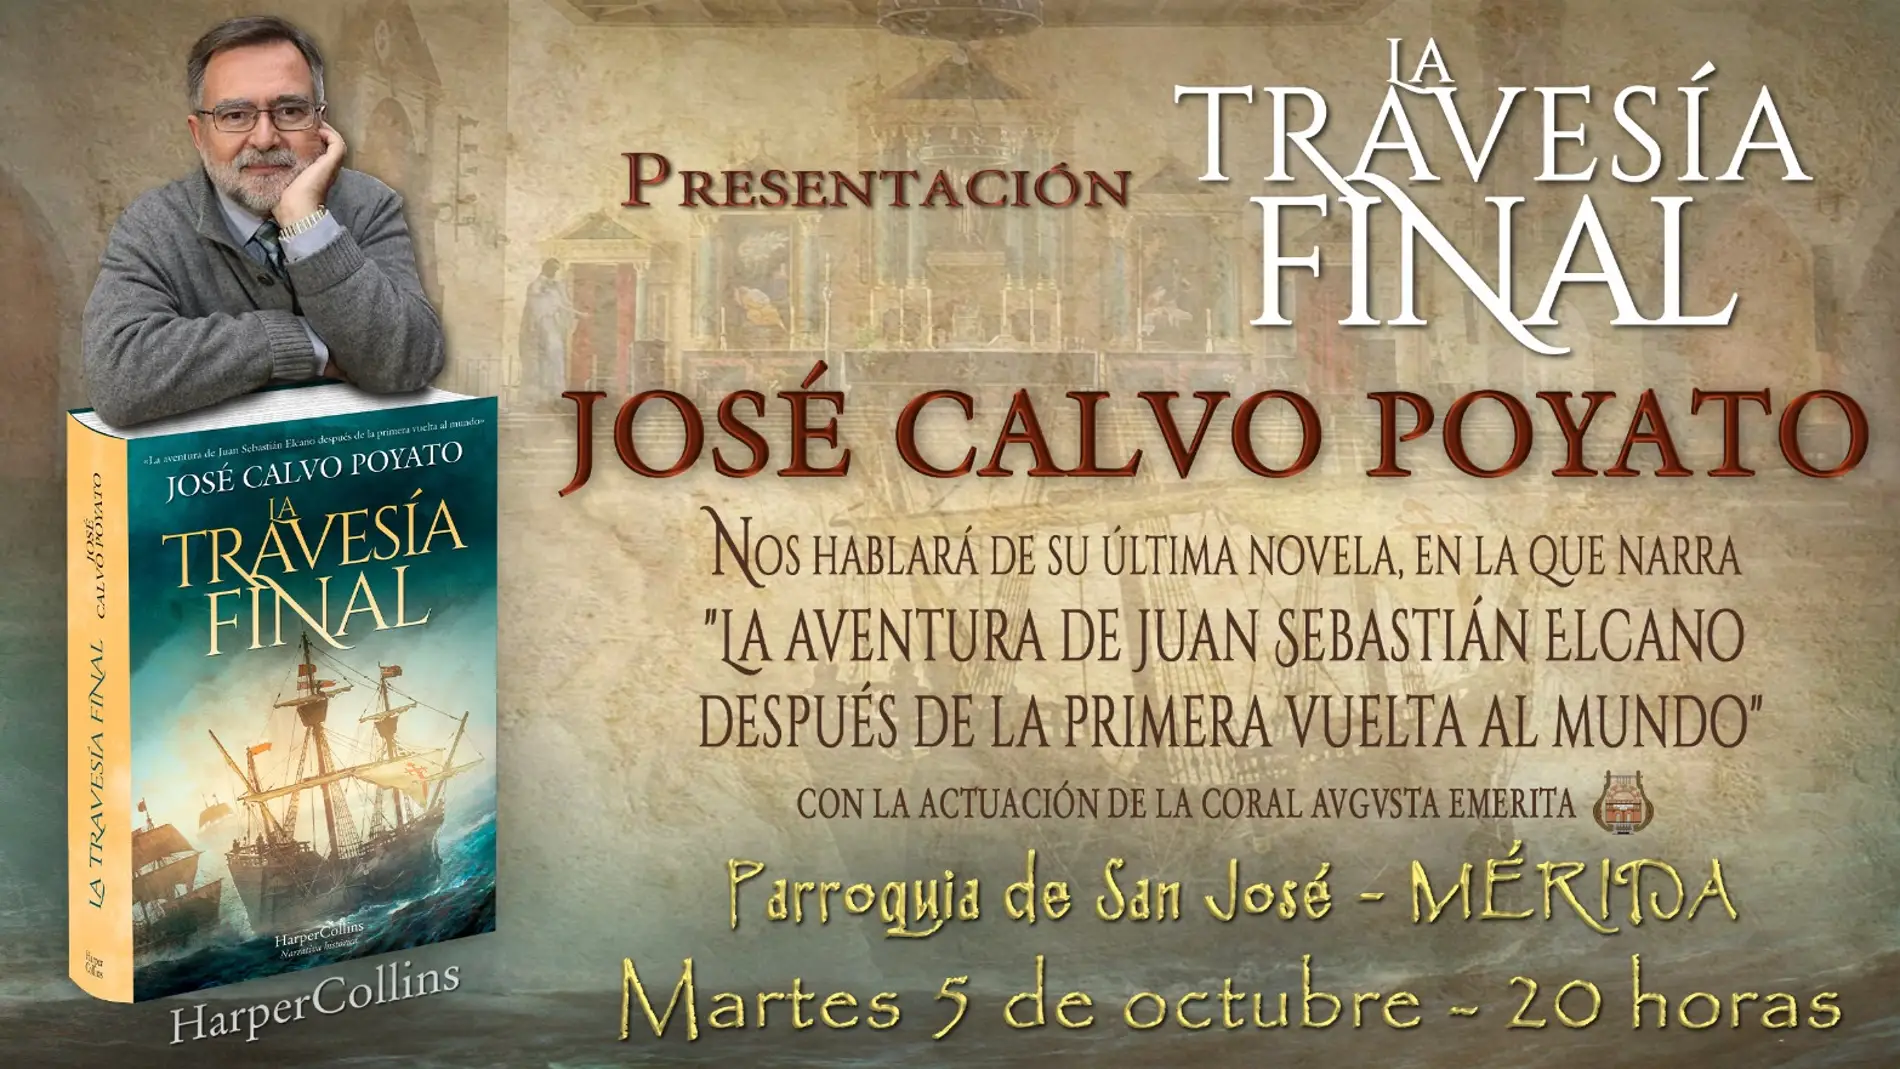 El escritor José Calvo Poyato presenta su nueva novela “La Travesía Final” en Mérida